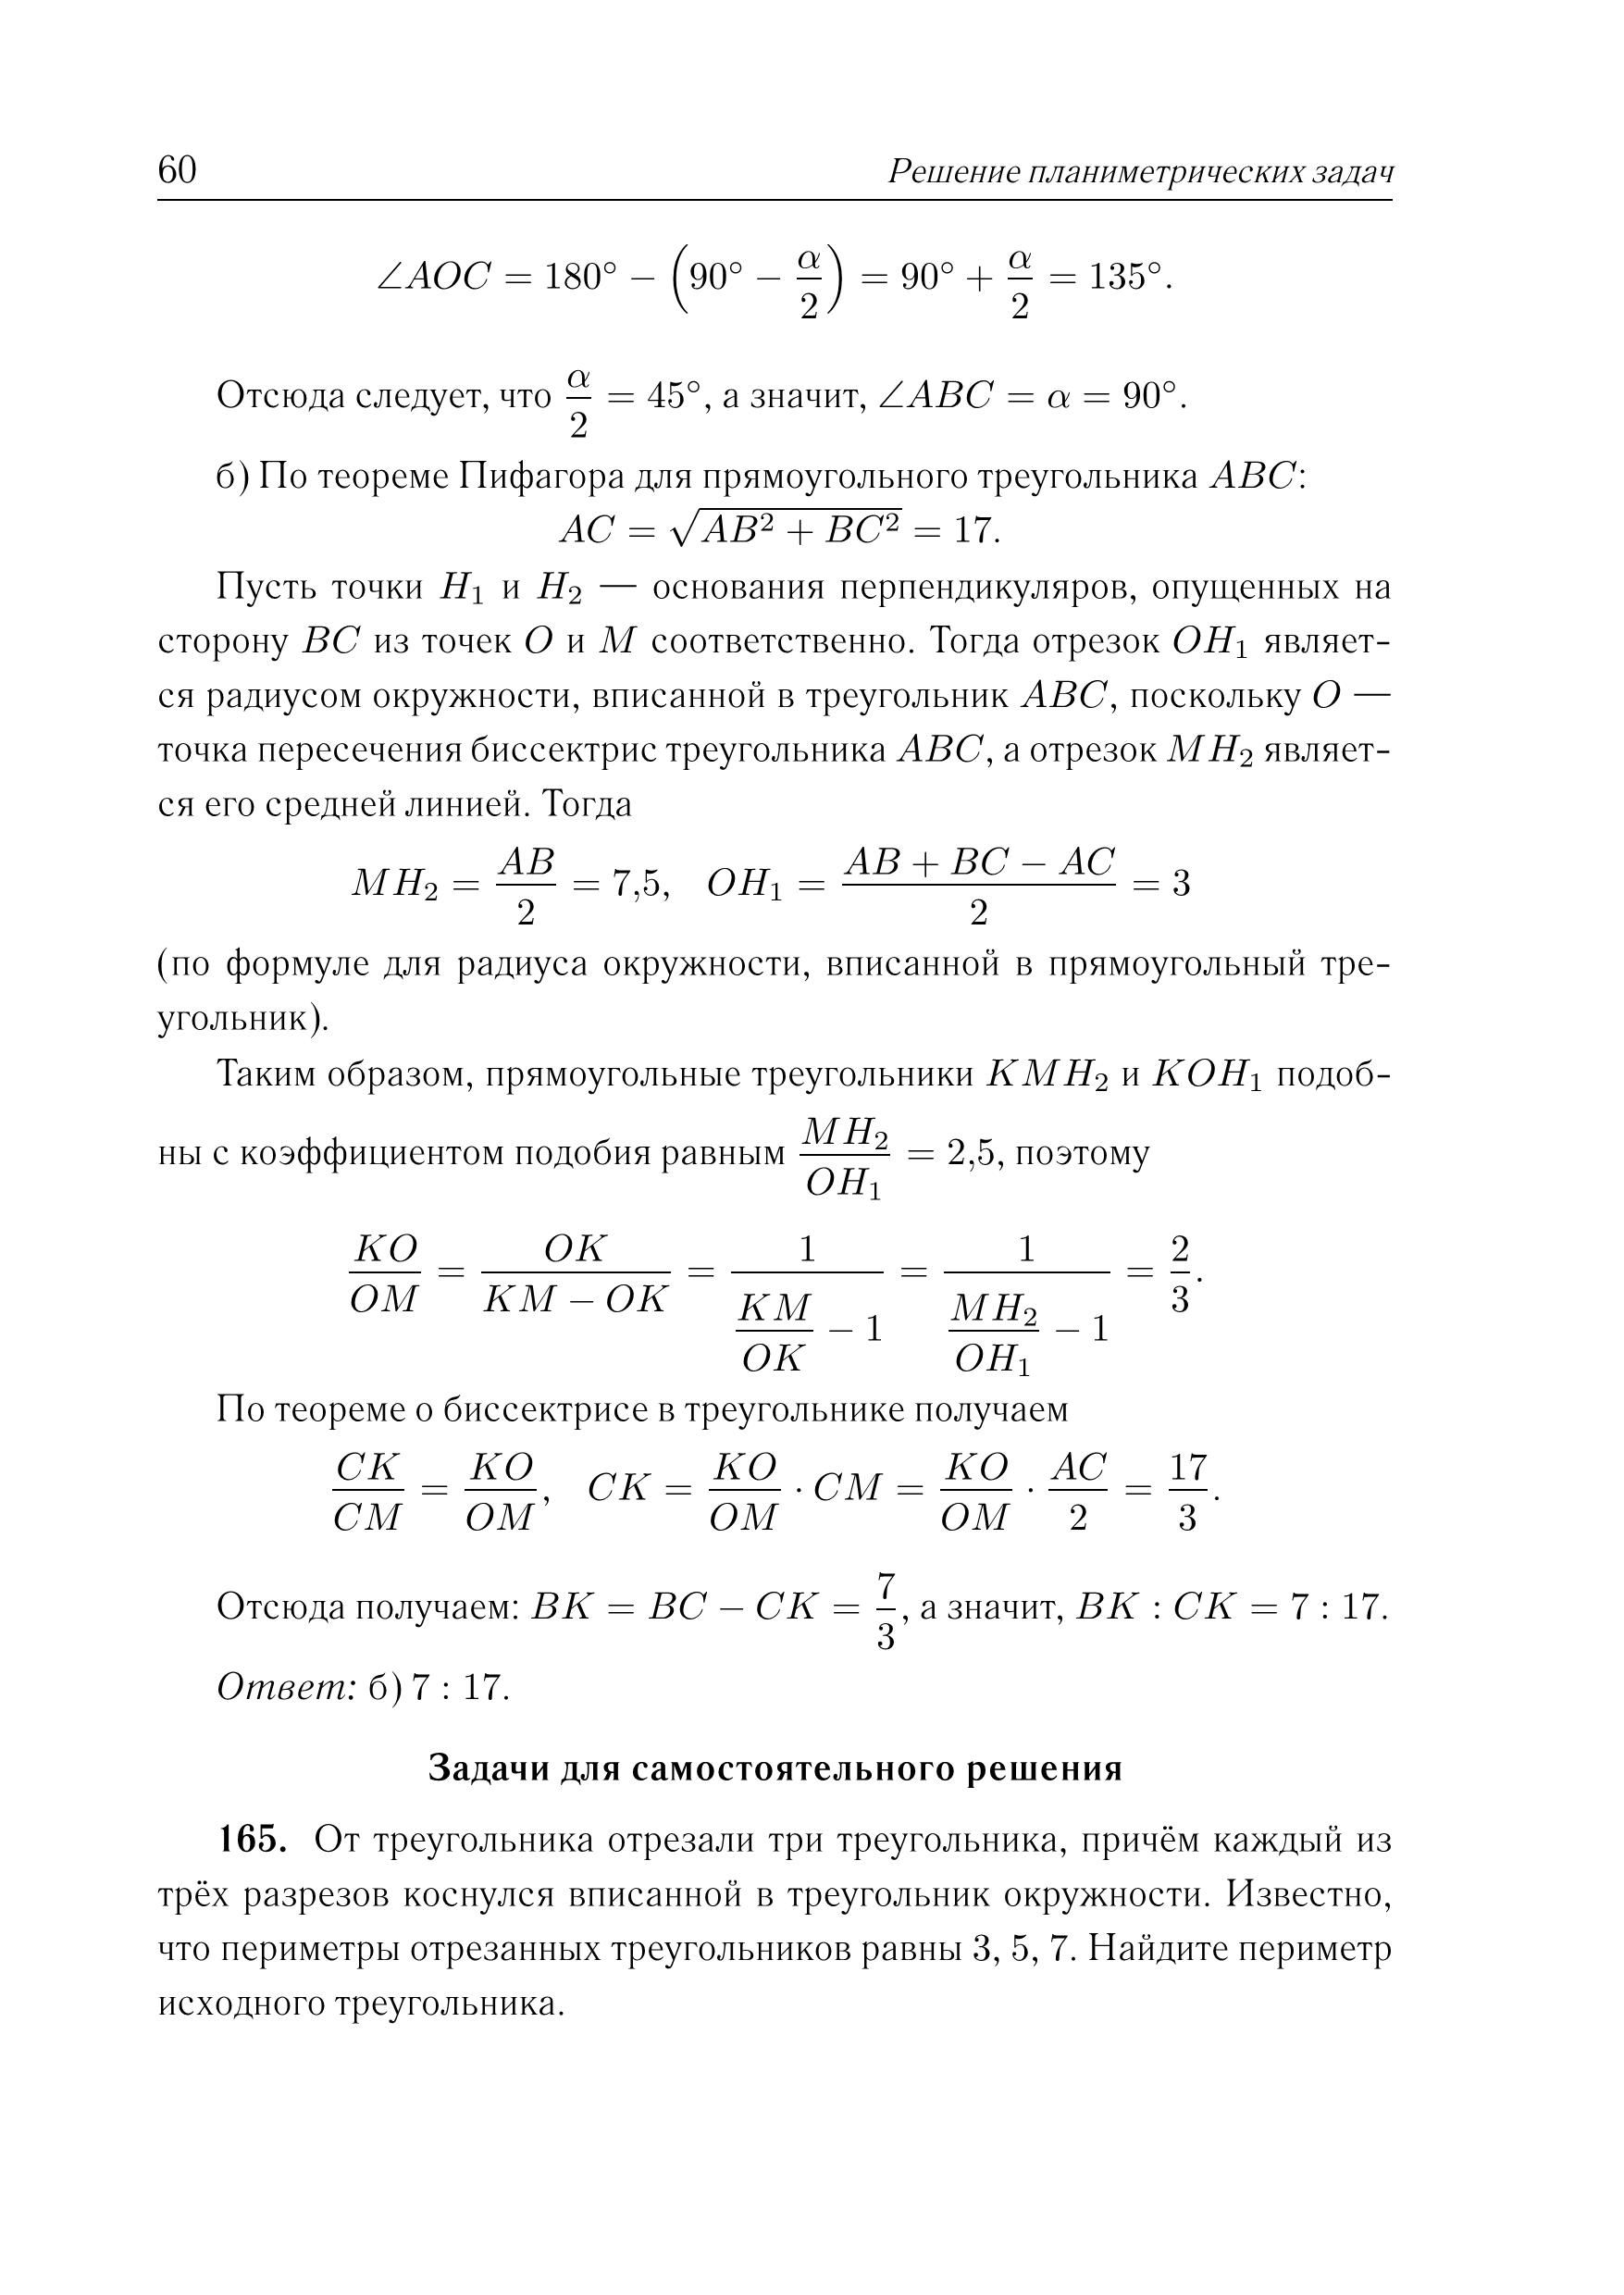 Математика. ЕГЭ. Решение планиметрических задач (задание 16). 3-е изд.